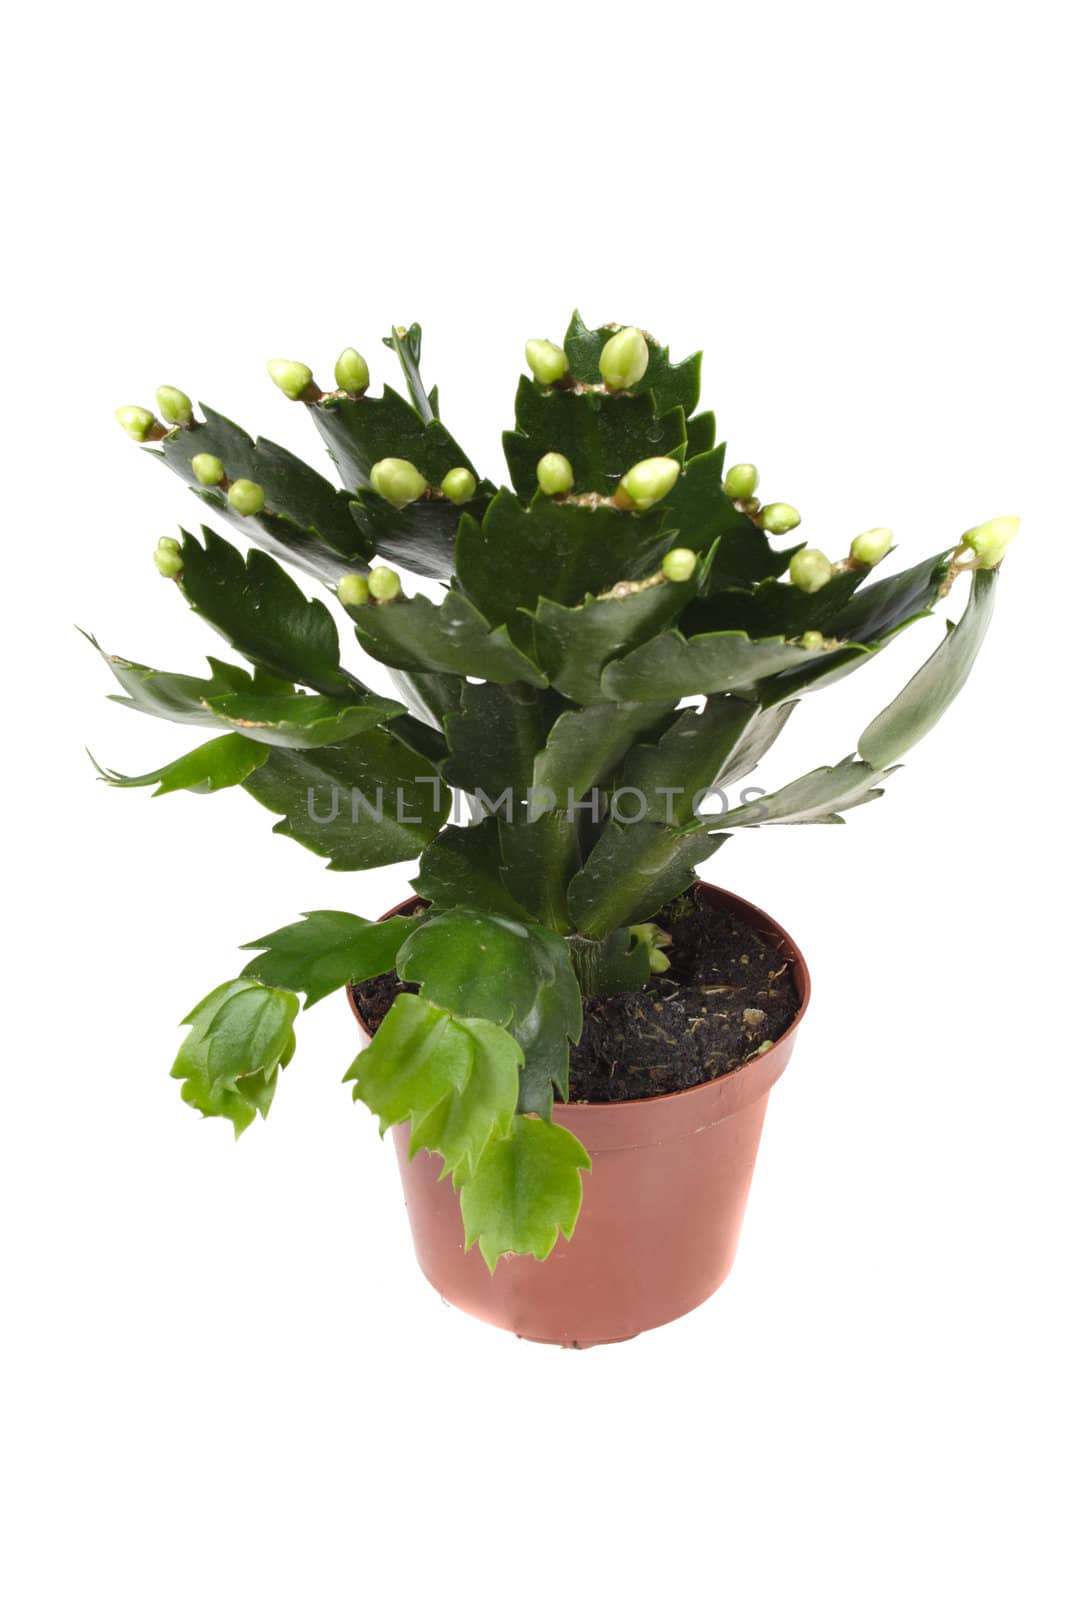 zygocactus in flower-pot by aguirre_mar